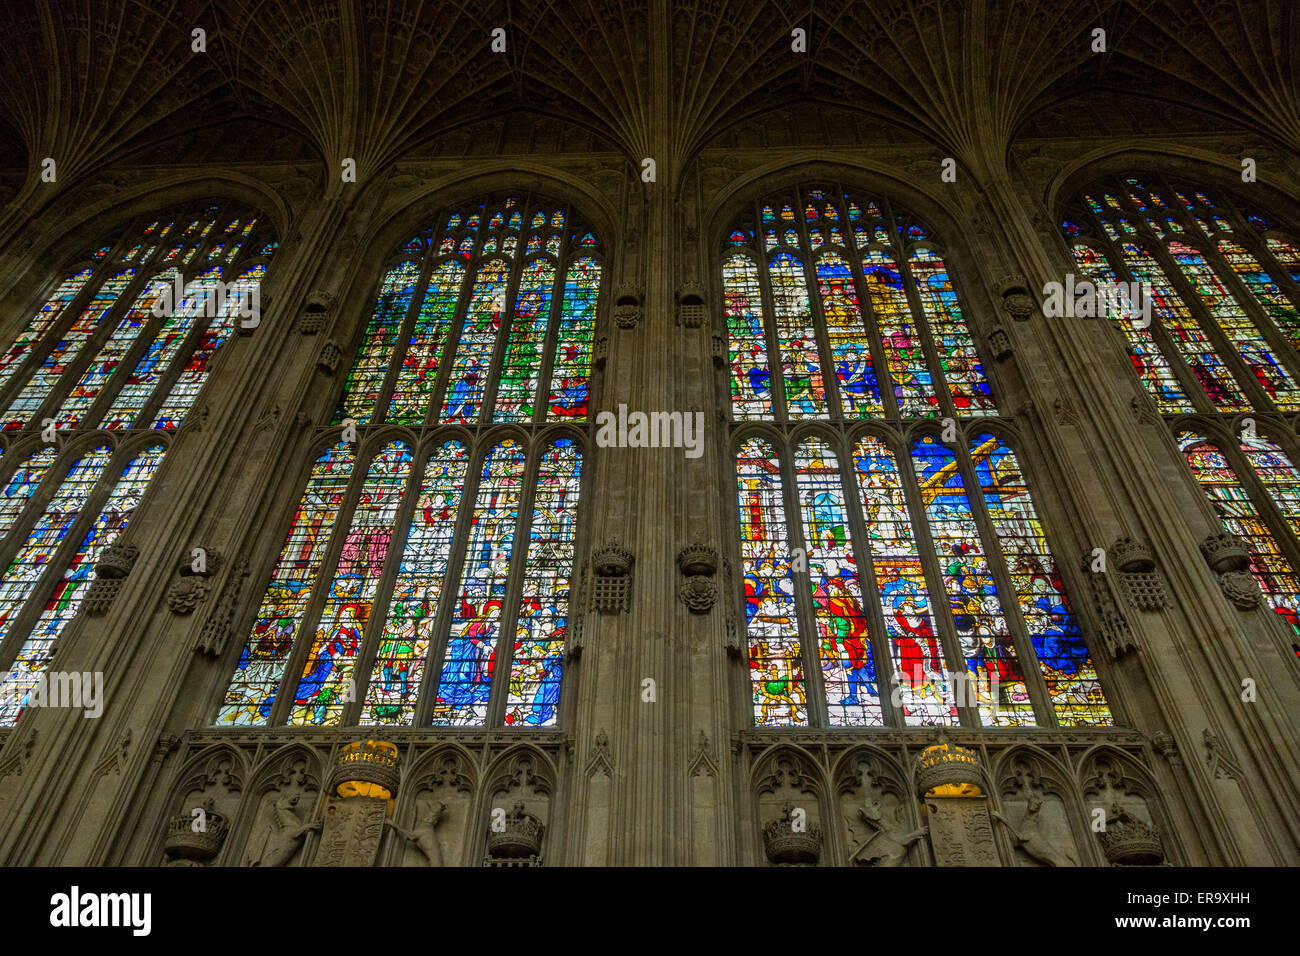 Royaume-uni, Angleterre, Cambridge. King's College Chapel, vitraux au-dessus des symboles de lignée royale. Banque D'Images